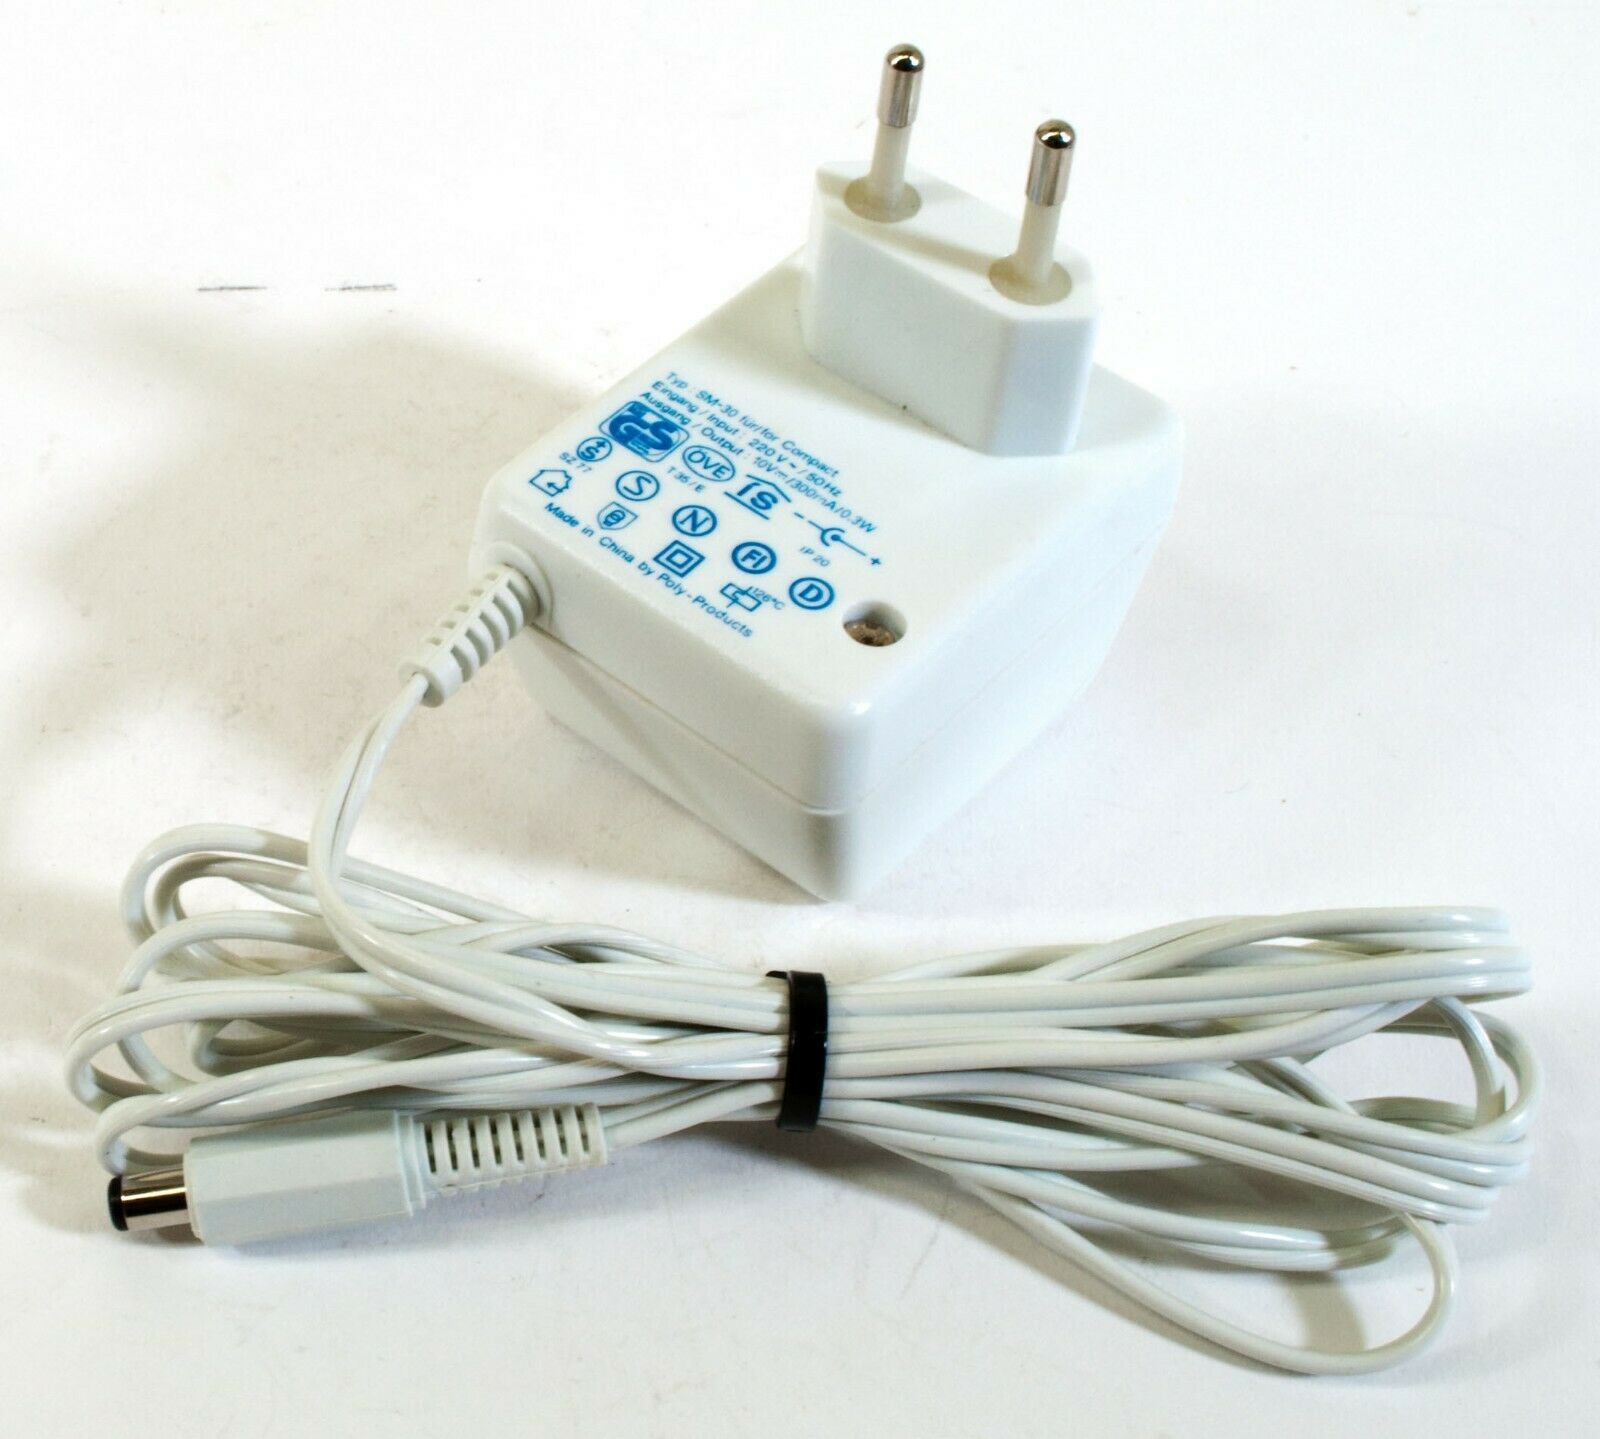 Epilady SM-30 AC Adapter 10V 300mA Original Power Supply Europlug Compact Output Current: 300 mA Voltage: 10 V MPN: - Click Image to Close